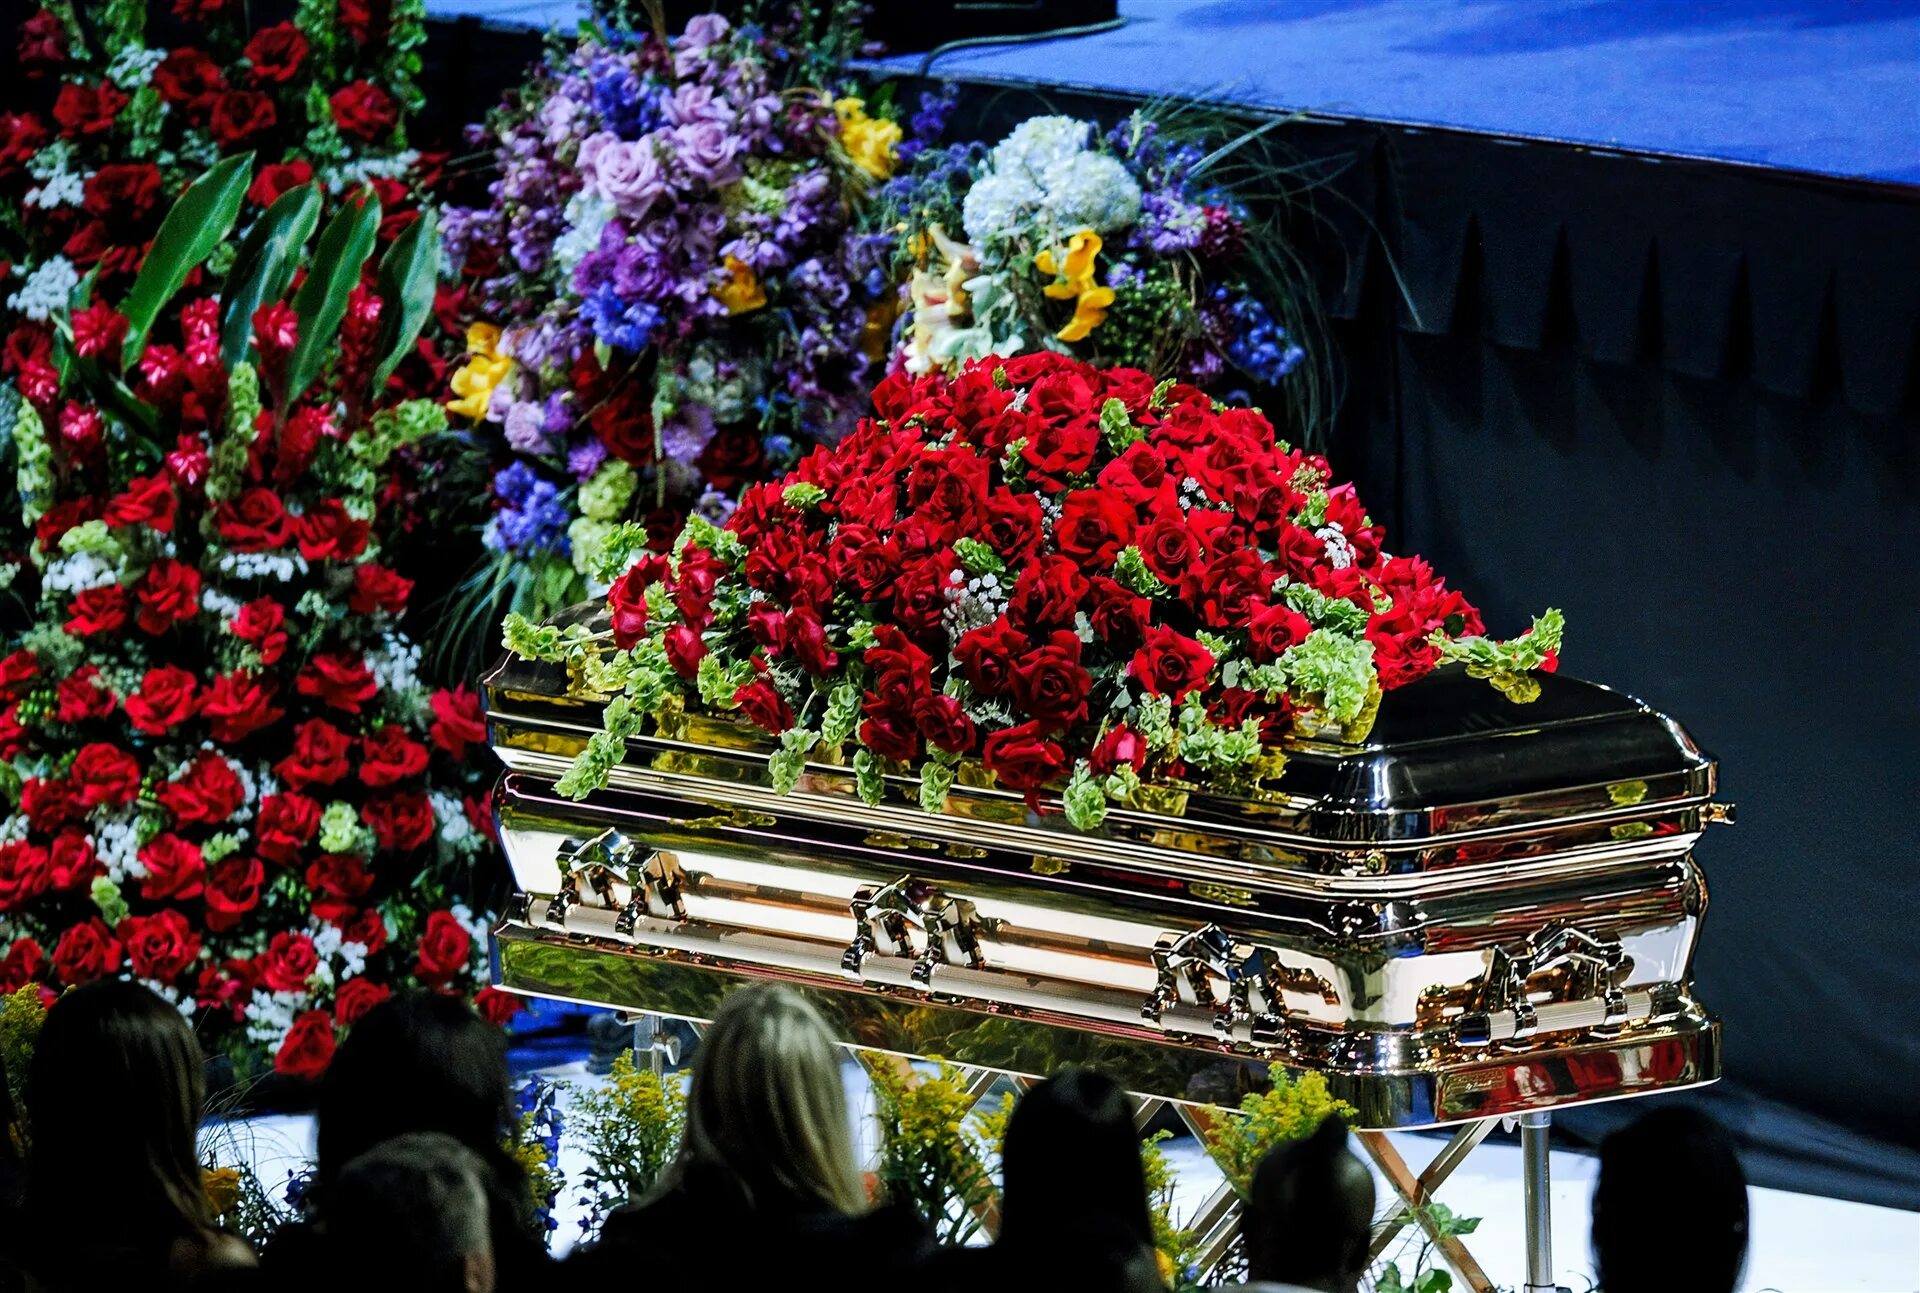 Прощание с миром. Могила Майкла Джексона. Похороны майка Джексон. Похороны Майкла Джексона могила.